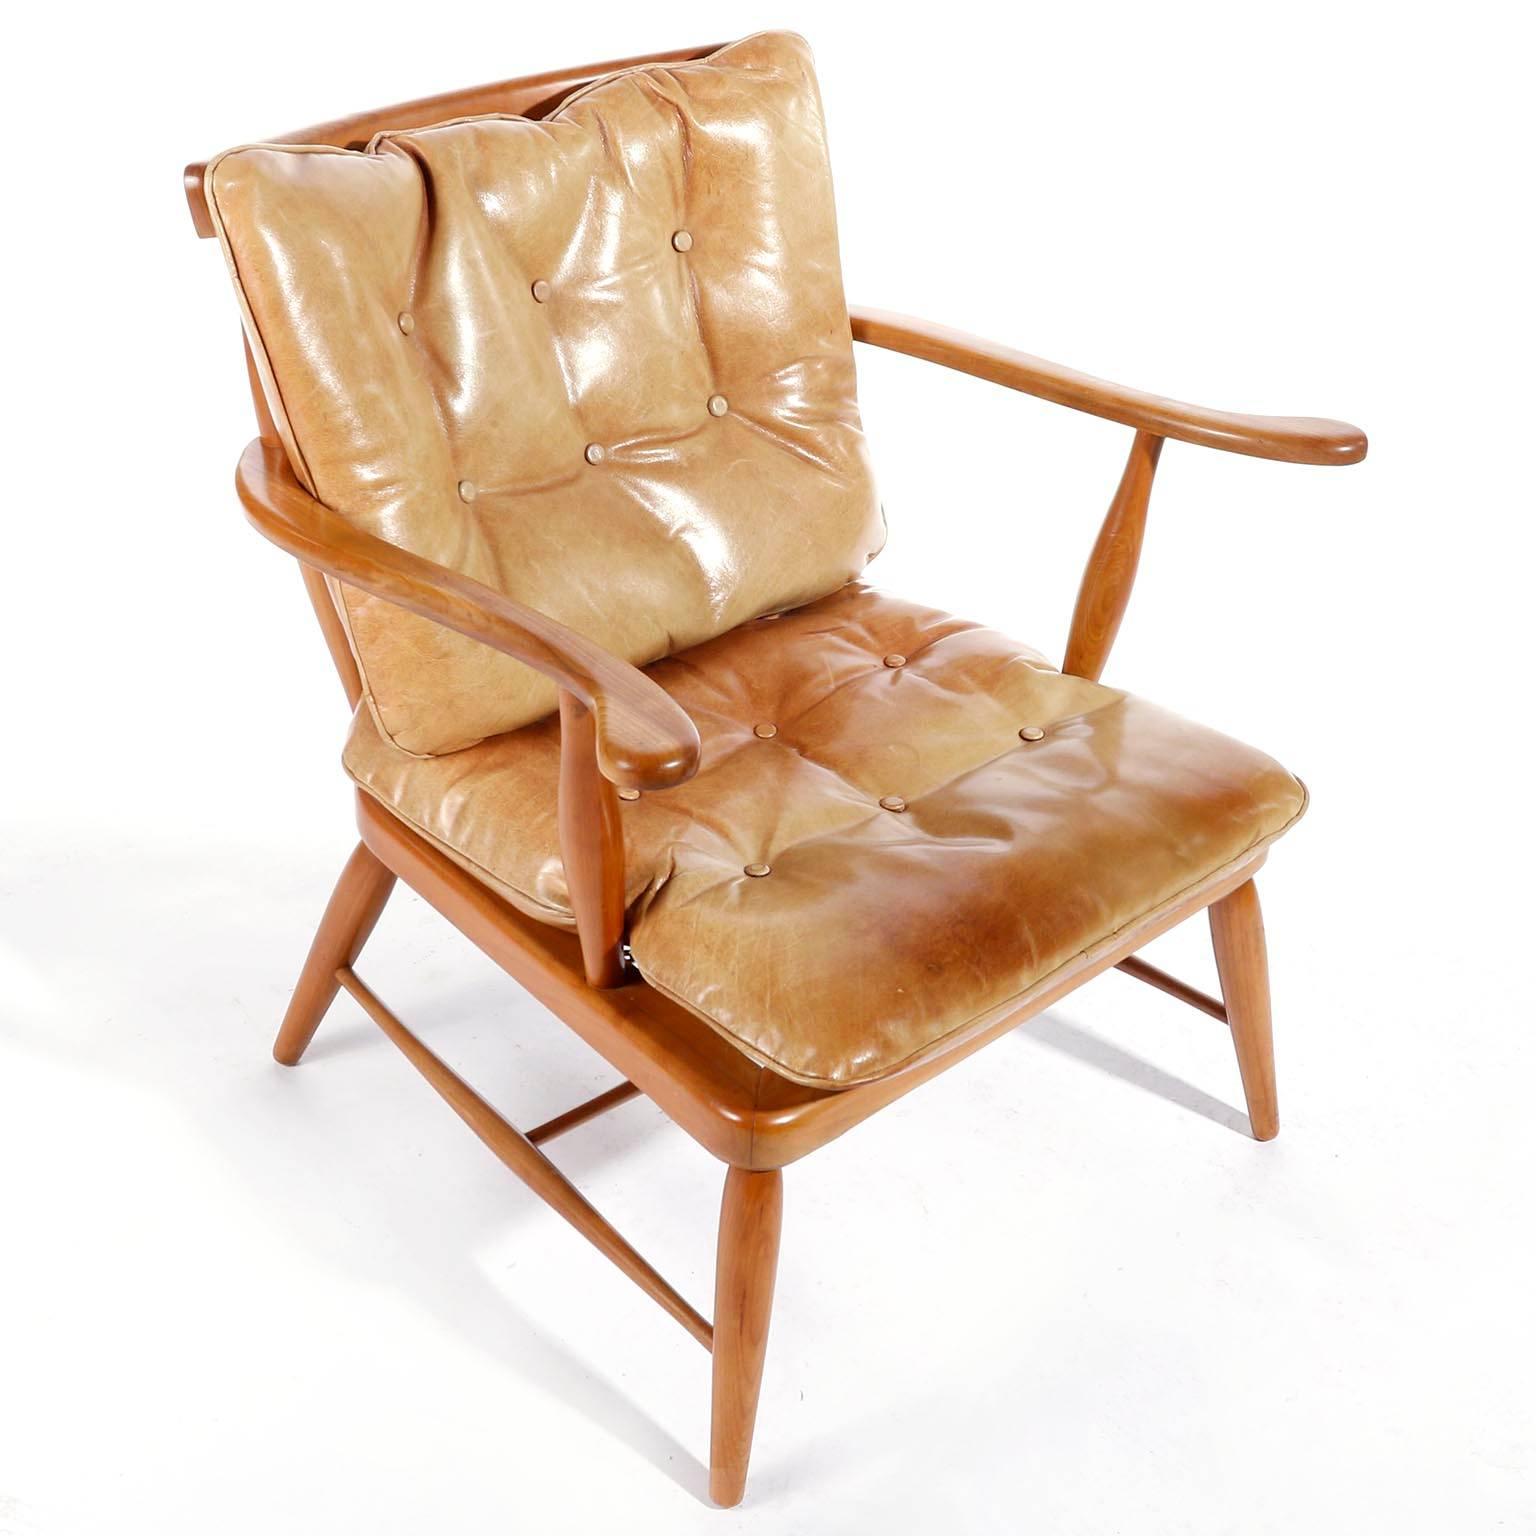 Ein Sessel mit Spindellehne, entworfen von Anna-Luelja Praun (1906-2004), Wien, Österreich, hergestellt um die Jahrhundertmitte, um 1952.
Er besteht aus einem warm getönten Massivholzrahmen mit zwei losen Lederkissen für die Sitzfläche und die